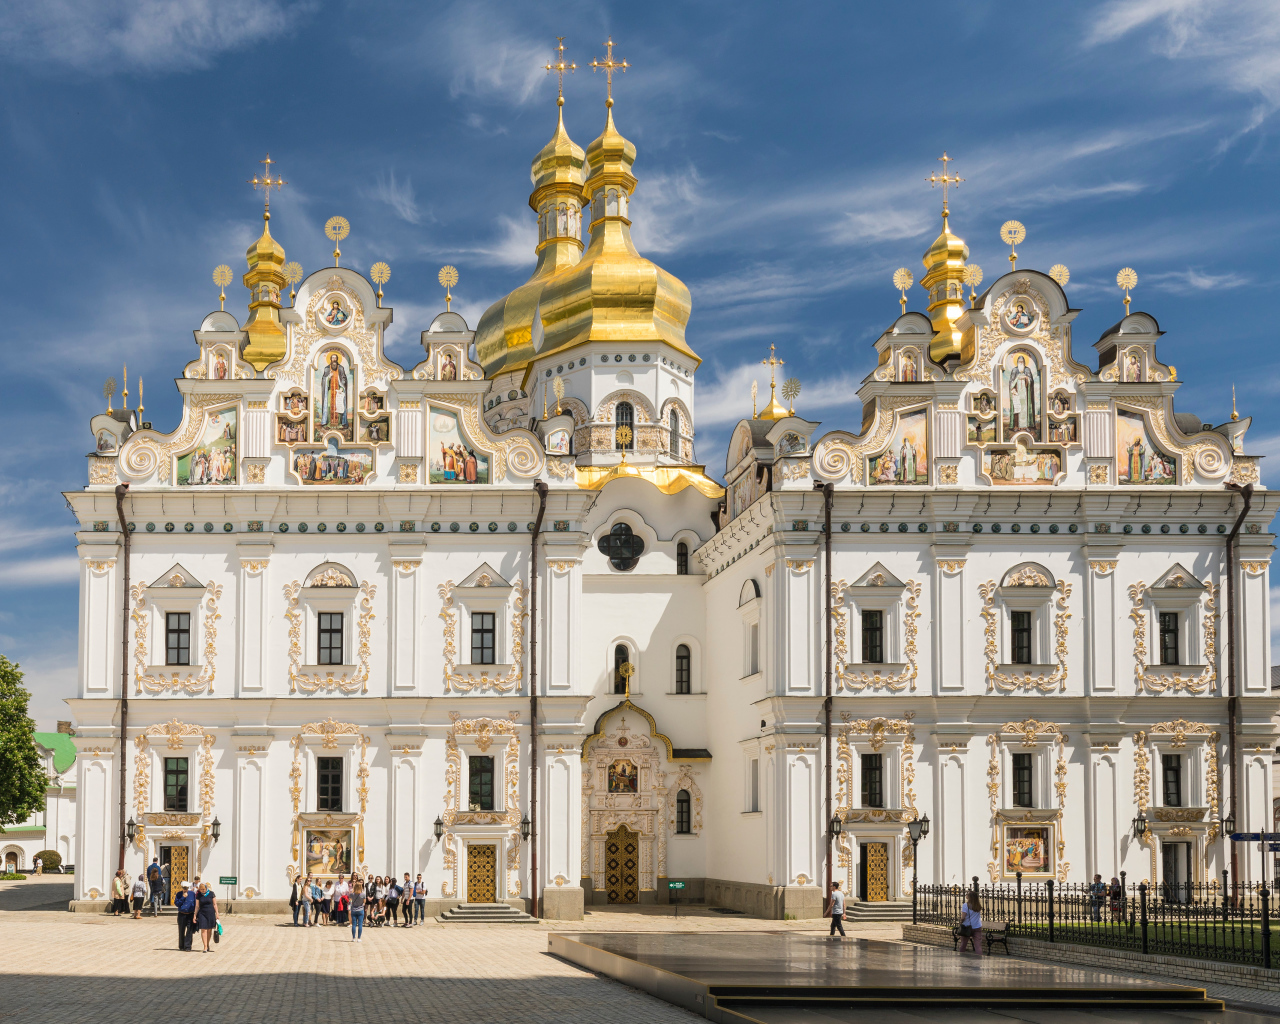 Красивый Успенский Собор под голубым небом, Киев. Украина